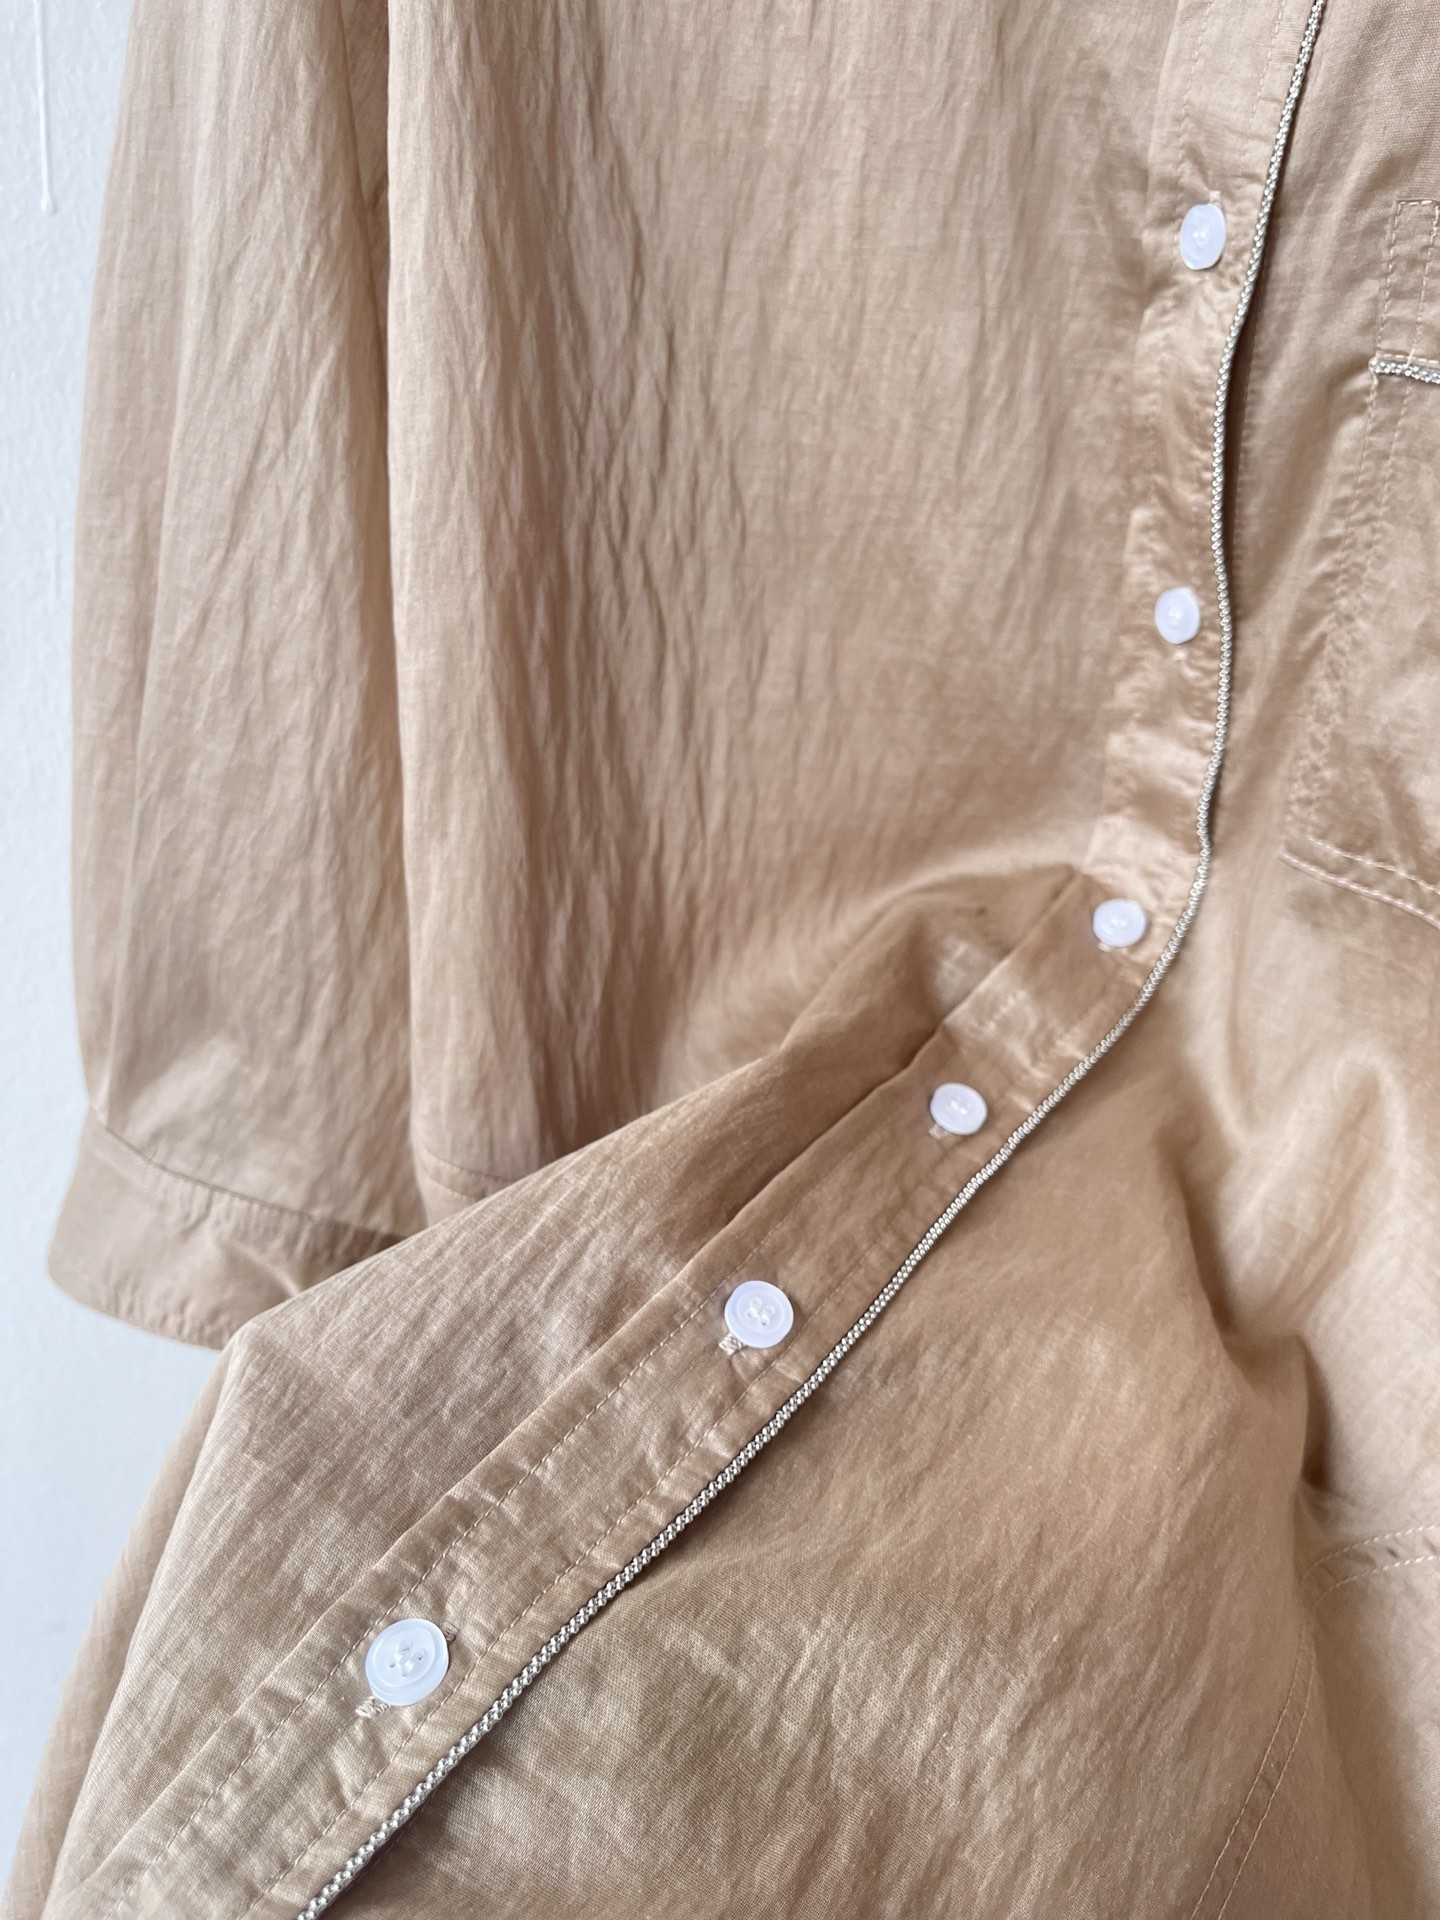 bc24春夏新款丝绵侧珠链衬衣可以搭配裤子一套入的意大利系列官网卖断货高端货！面料裤型和款式都无可挑剔的